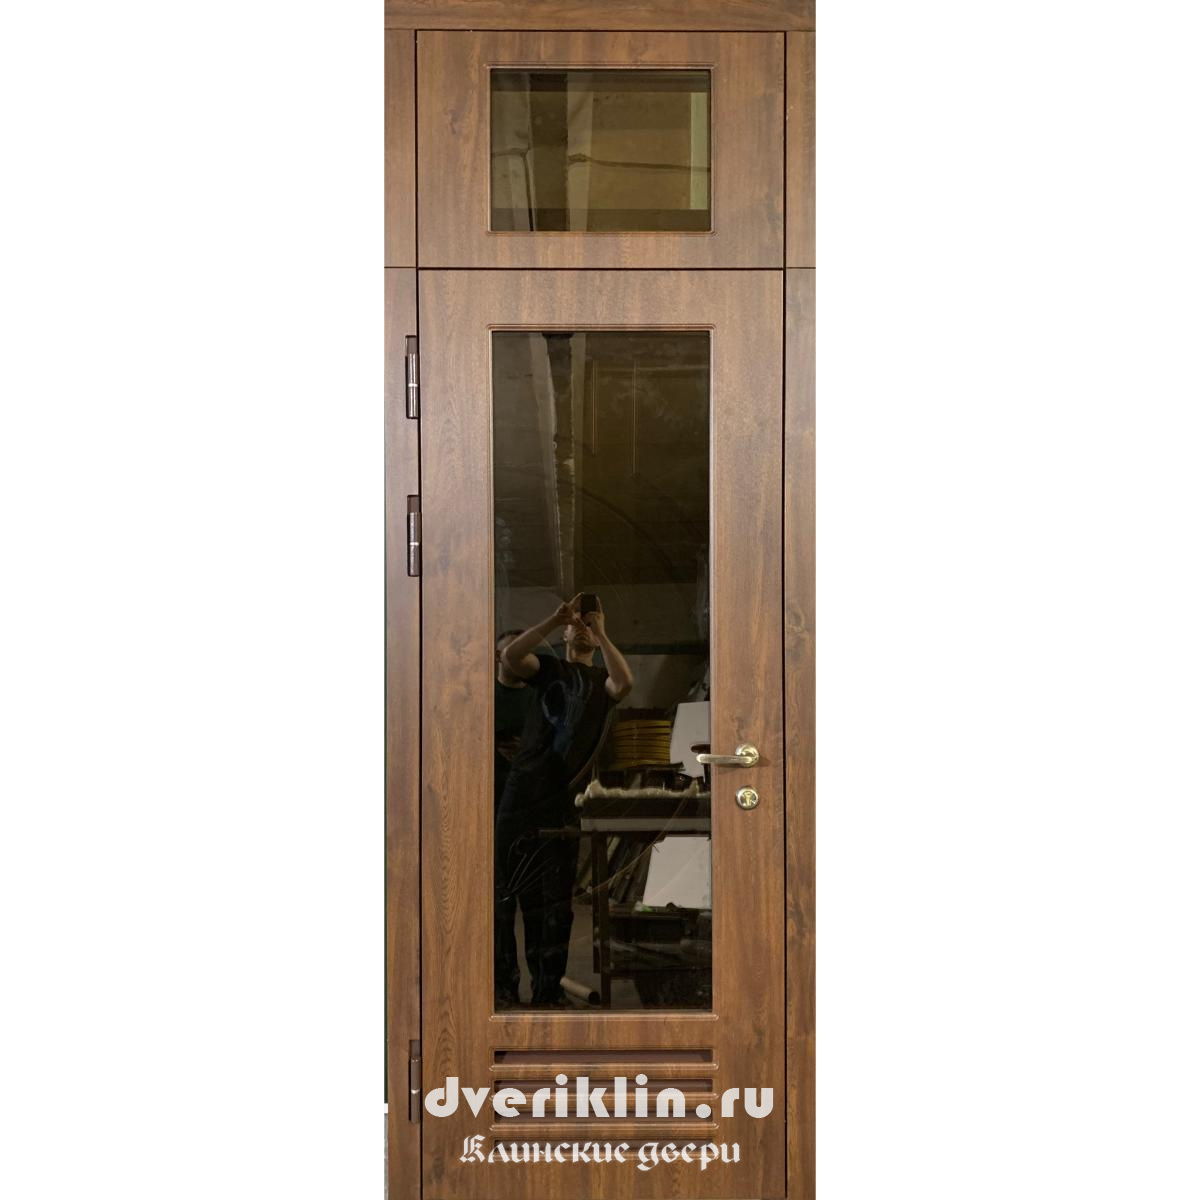 Дверь в котельную DTK-01 (Технические)